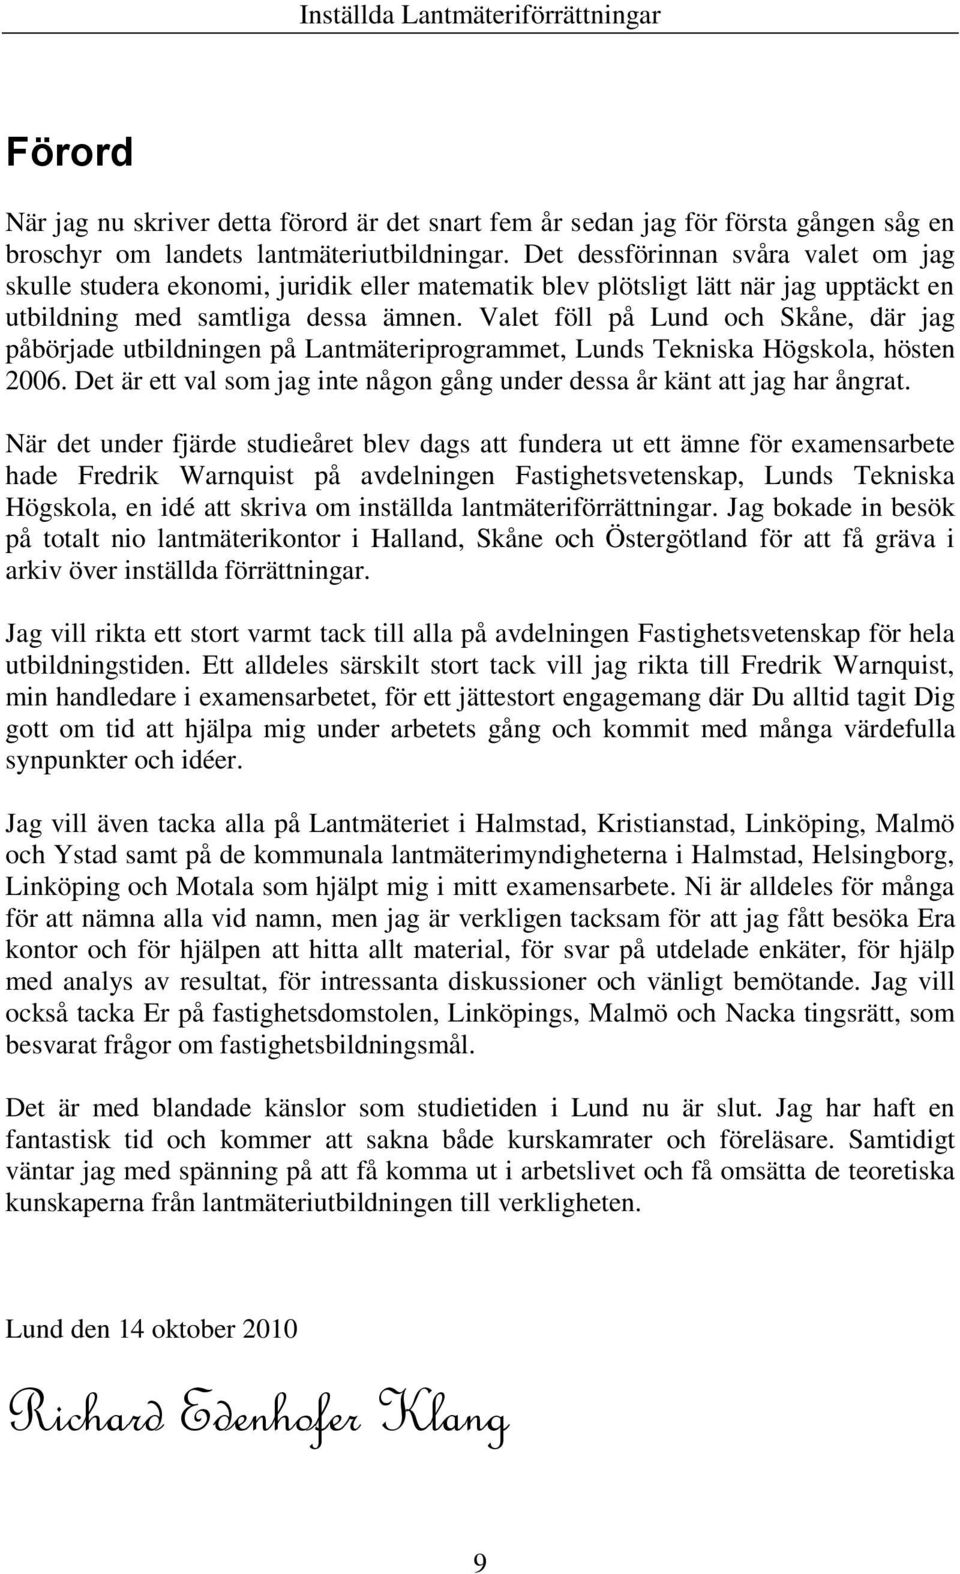 Valet föll på Lund och Skåne, där jag påbörjade utbildningen på Lantmäteriprogrammet, Lunds Tekniska Högskola, hösten 2006.